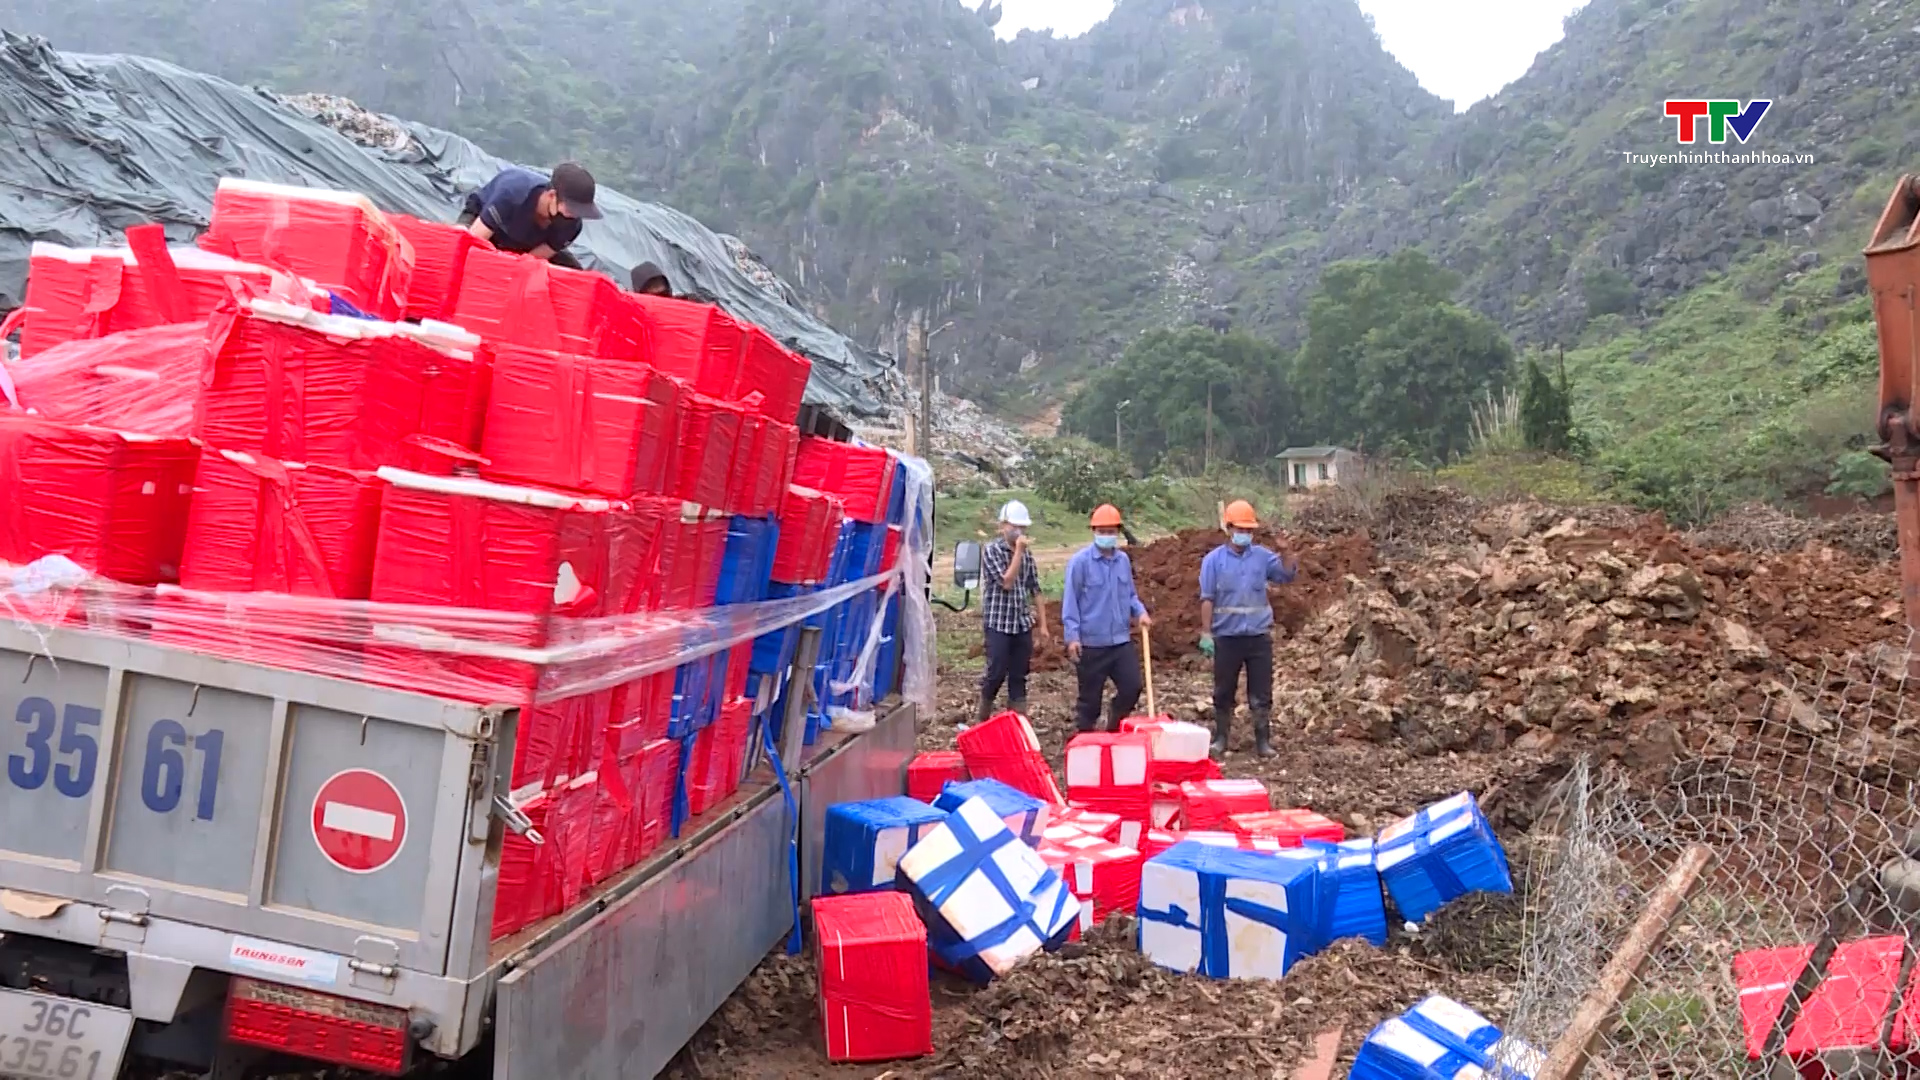 Đội Quản lý thị trường số 10, Cục Quản lý thị trường Thanh Hóa tiêu hủy trên 4.500 kg cá khoai nhiễm Formaldehyte- Ảnh 2.